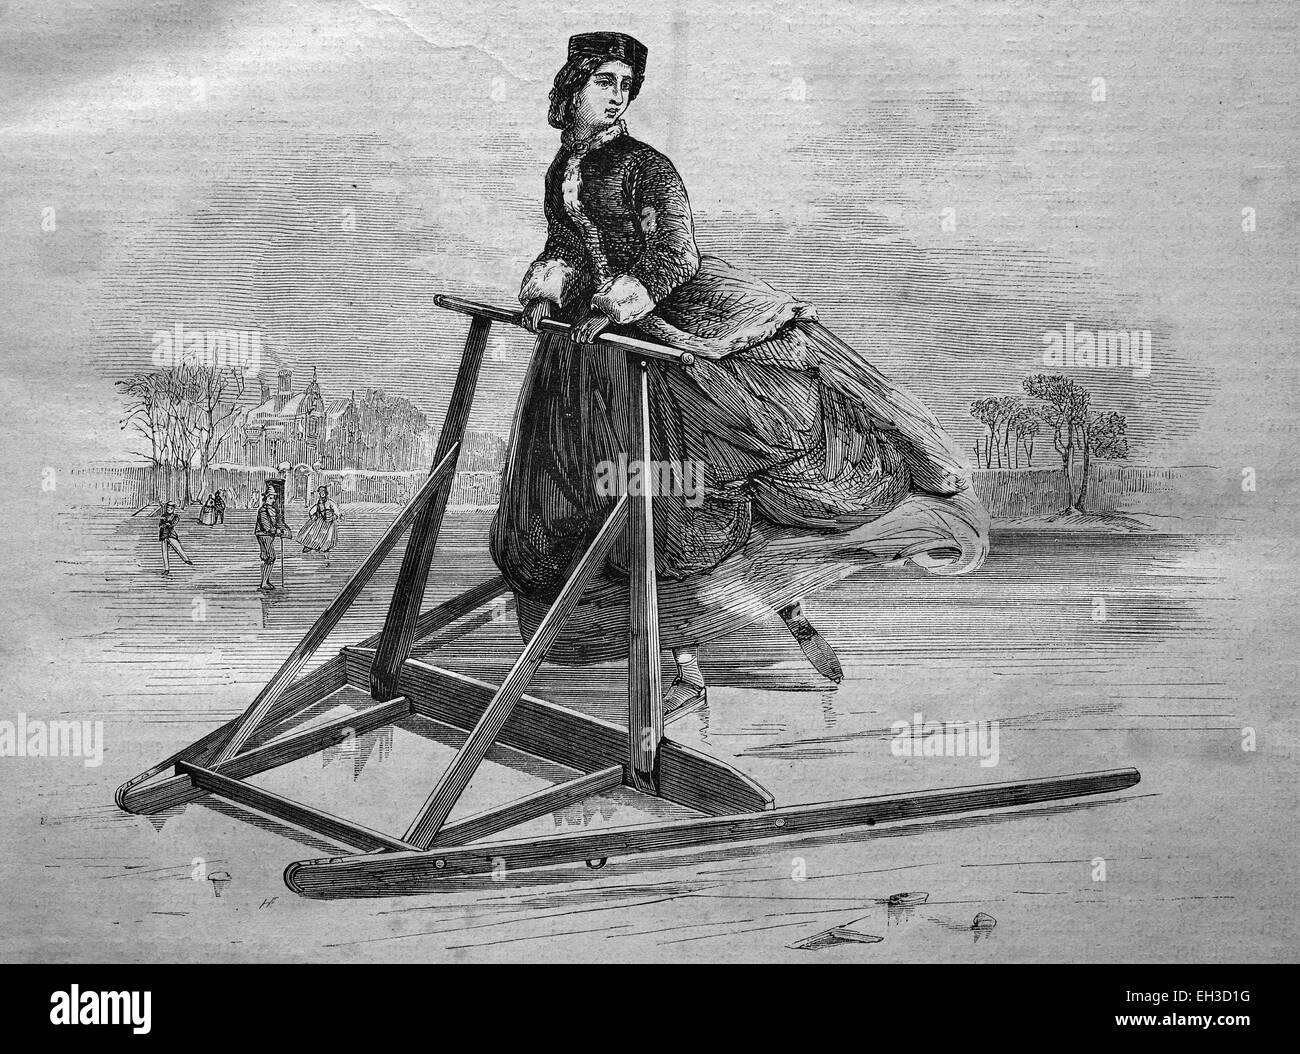 Skating frame for women, historical engraving, 1869 Stock Photo